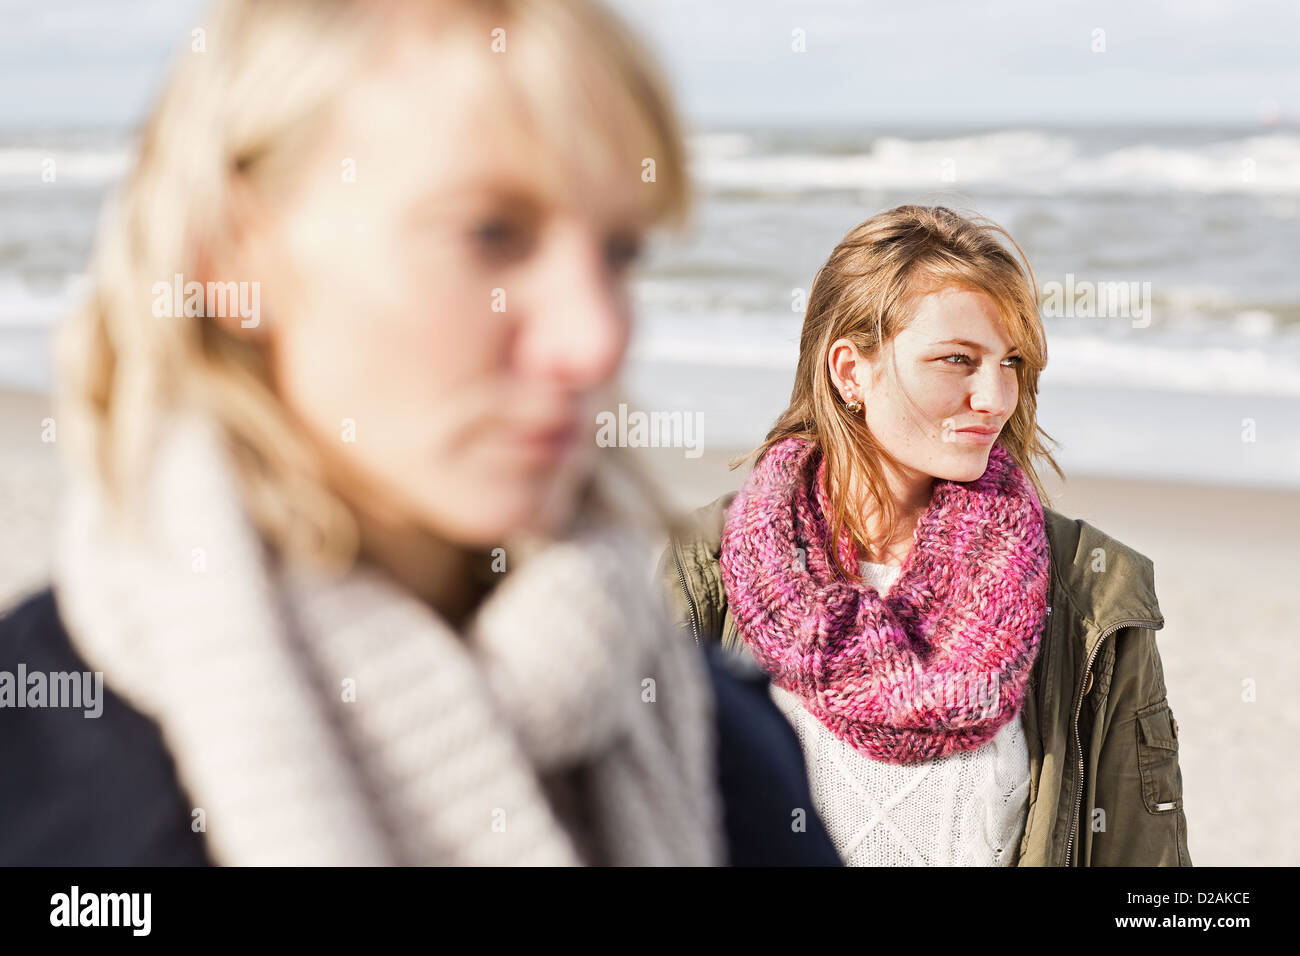 Women standing on beach Stock Photo